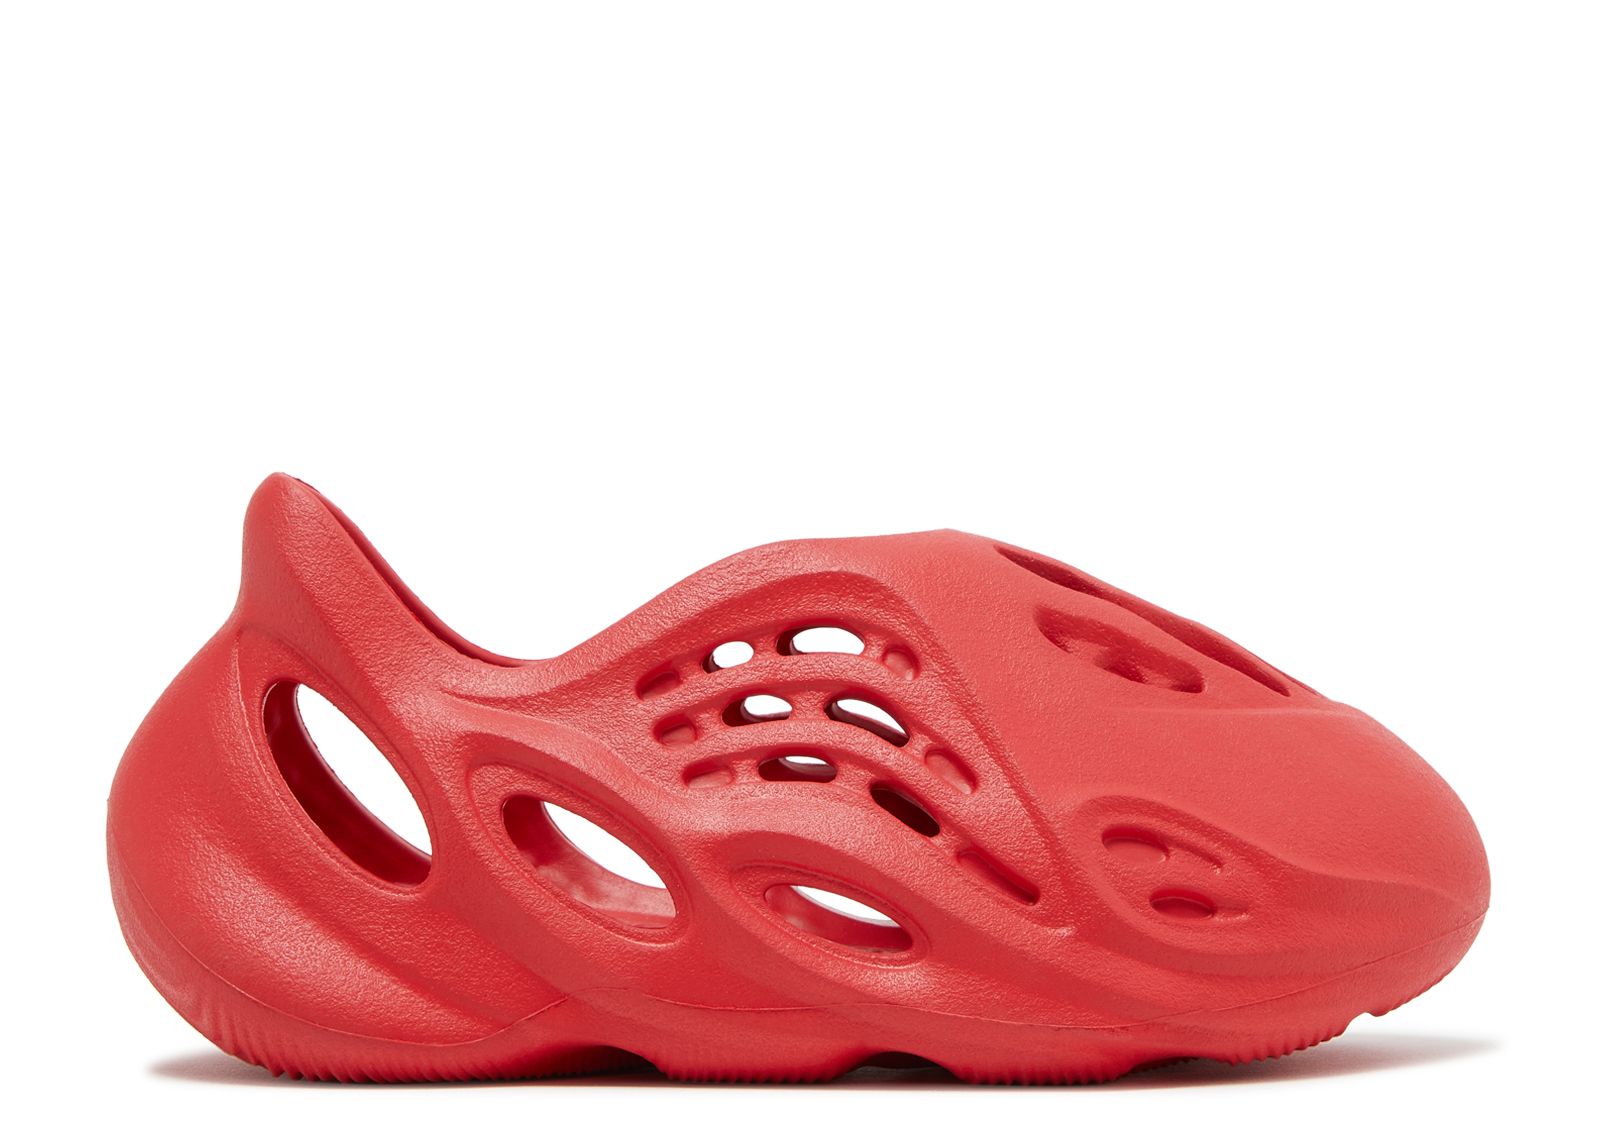 Кроссовки adidas Yeezy Foam Runner Kids 'Vermilion', красный цена и фото